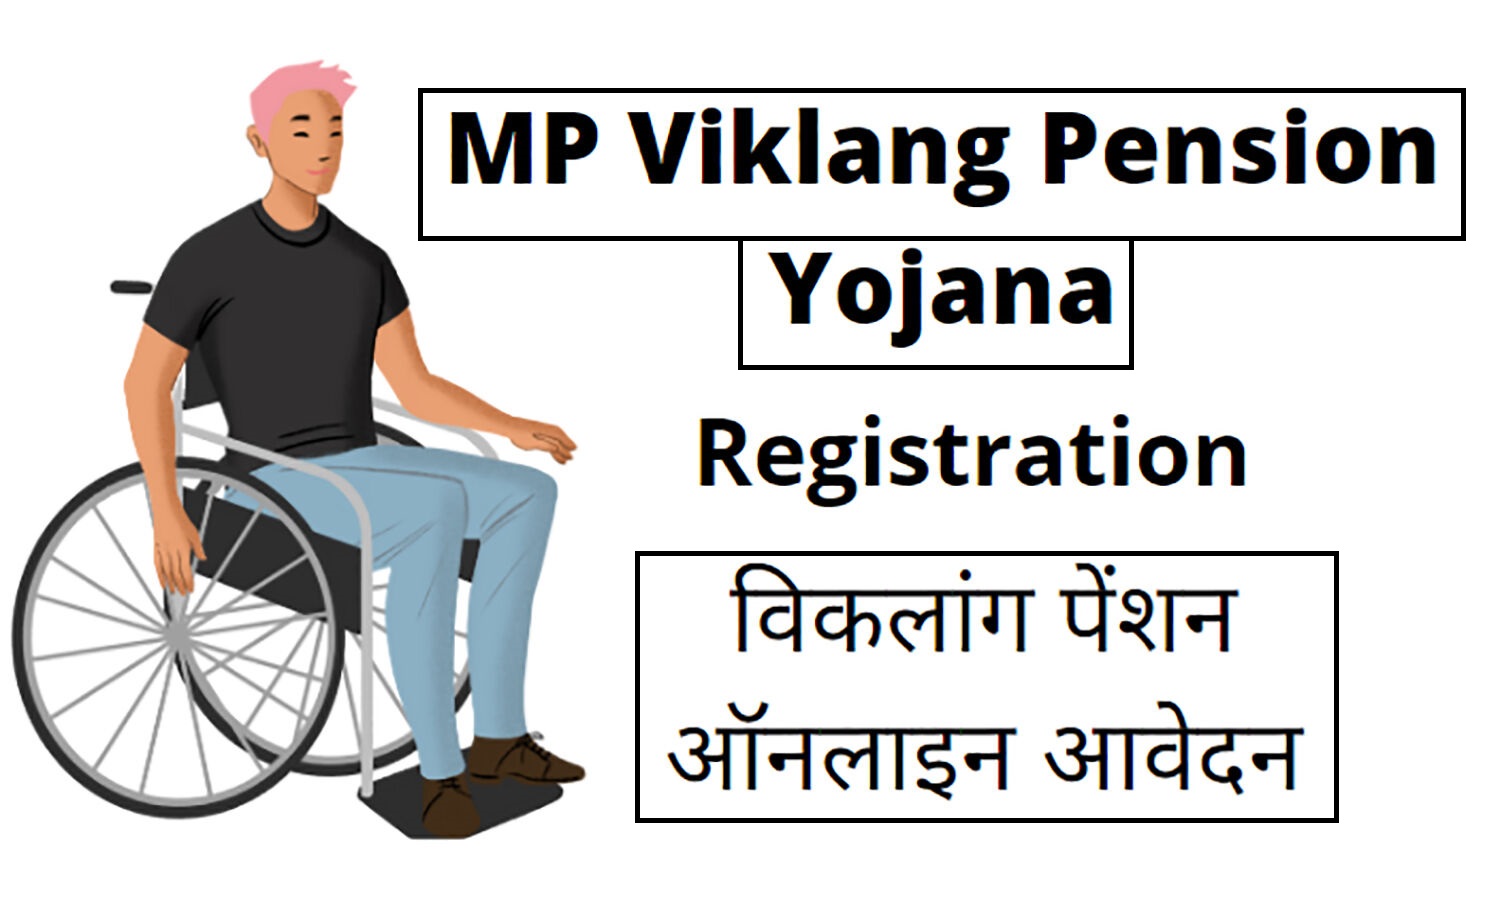 Viklang Pension Yojna : विकलांग पेंशन योजना में ऑनलाइन आवेदन कैसे करे